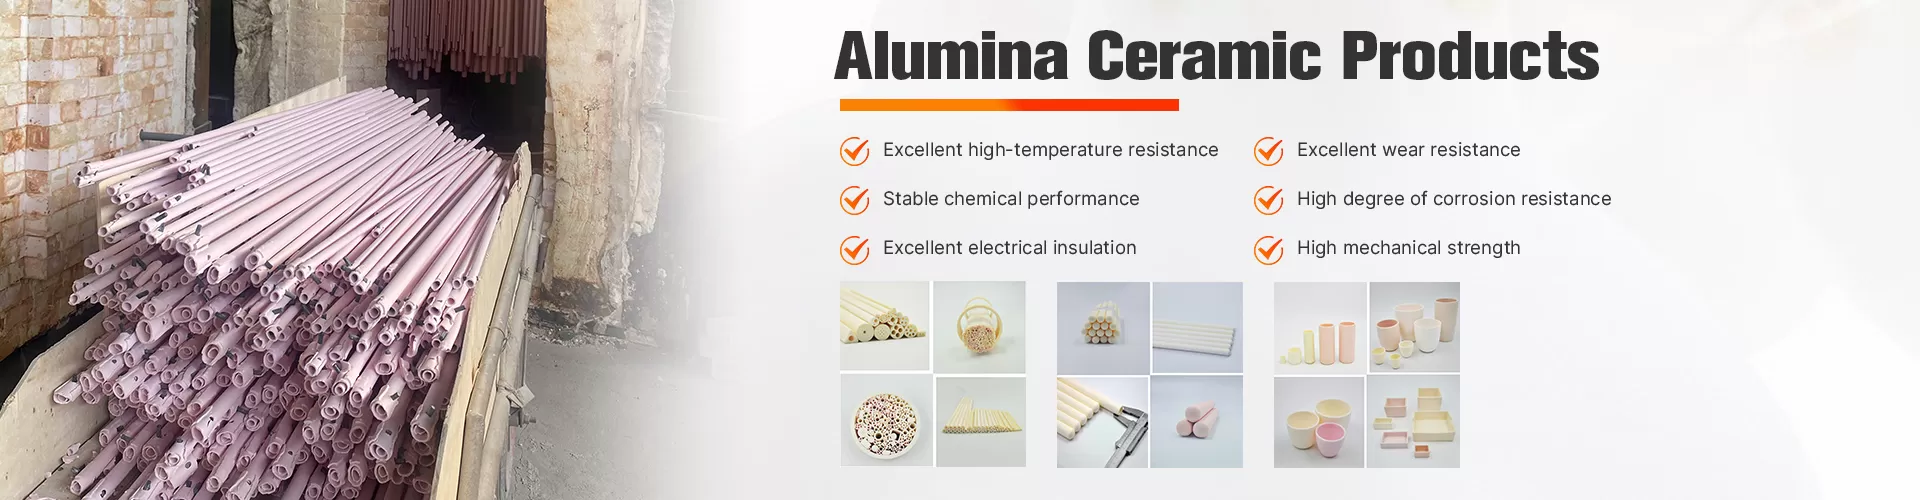 Alumina Four-Bore Insulating Ceramic Tube